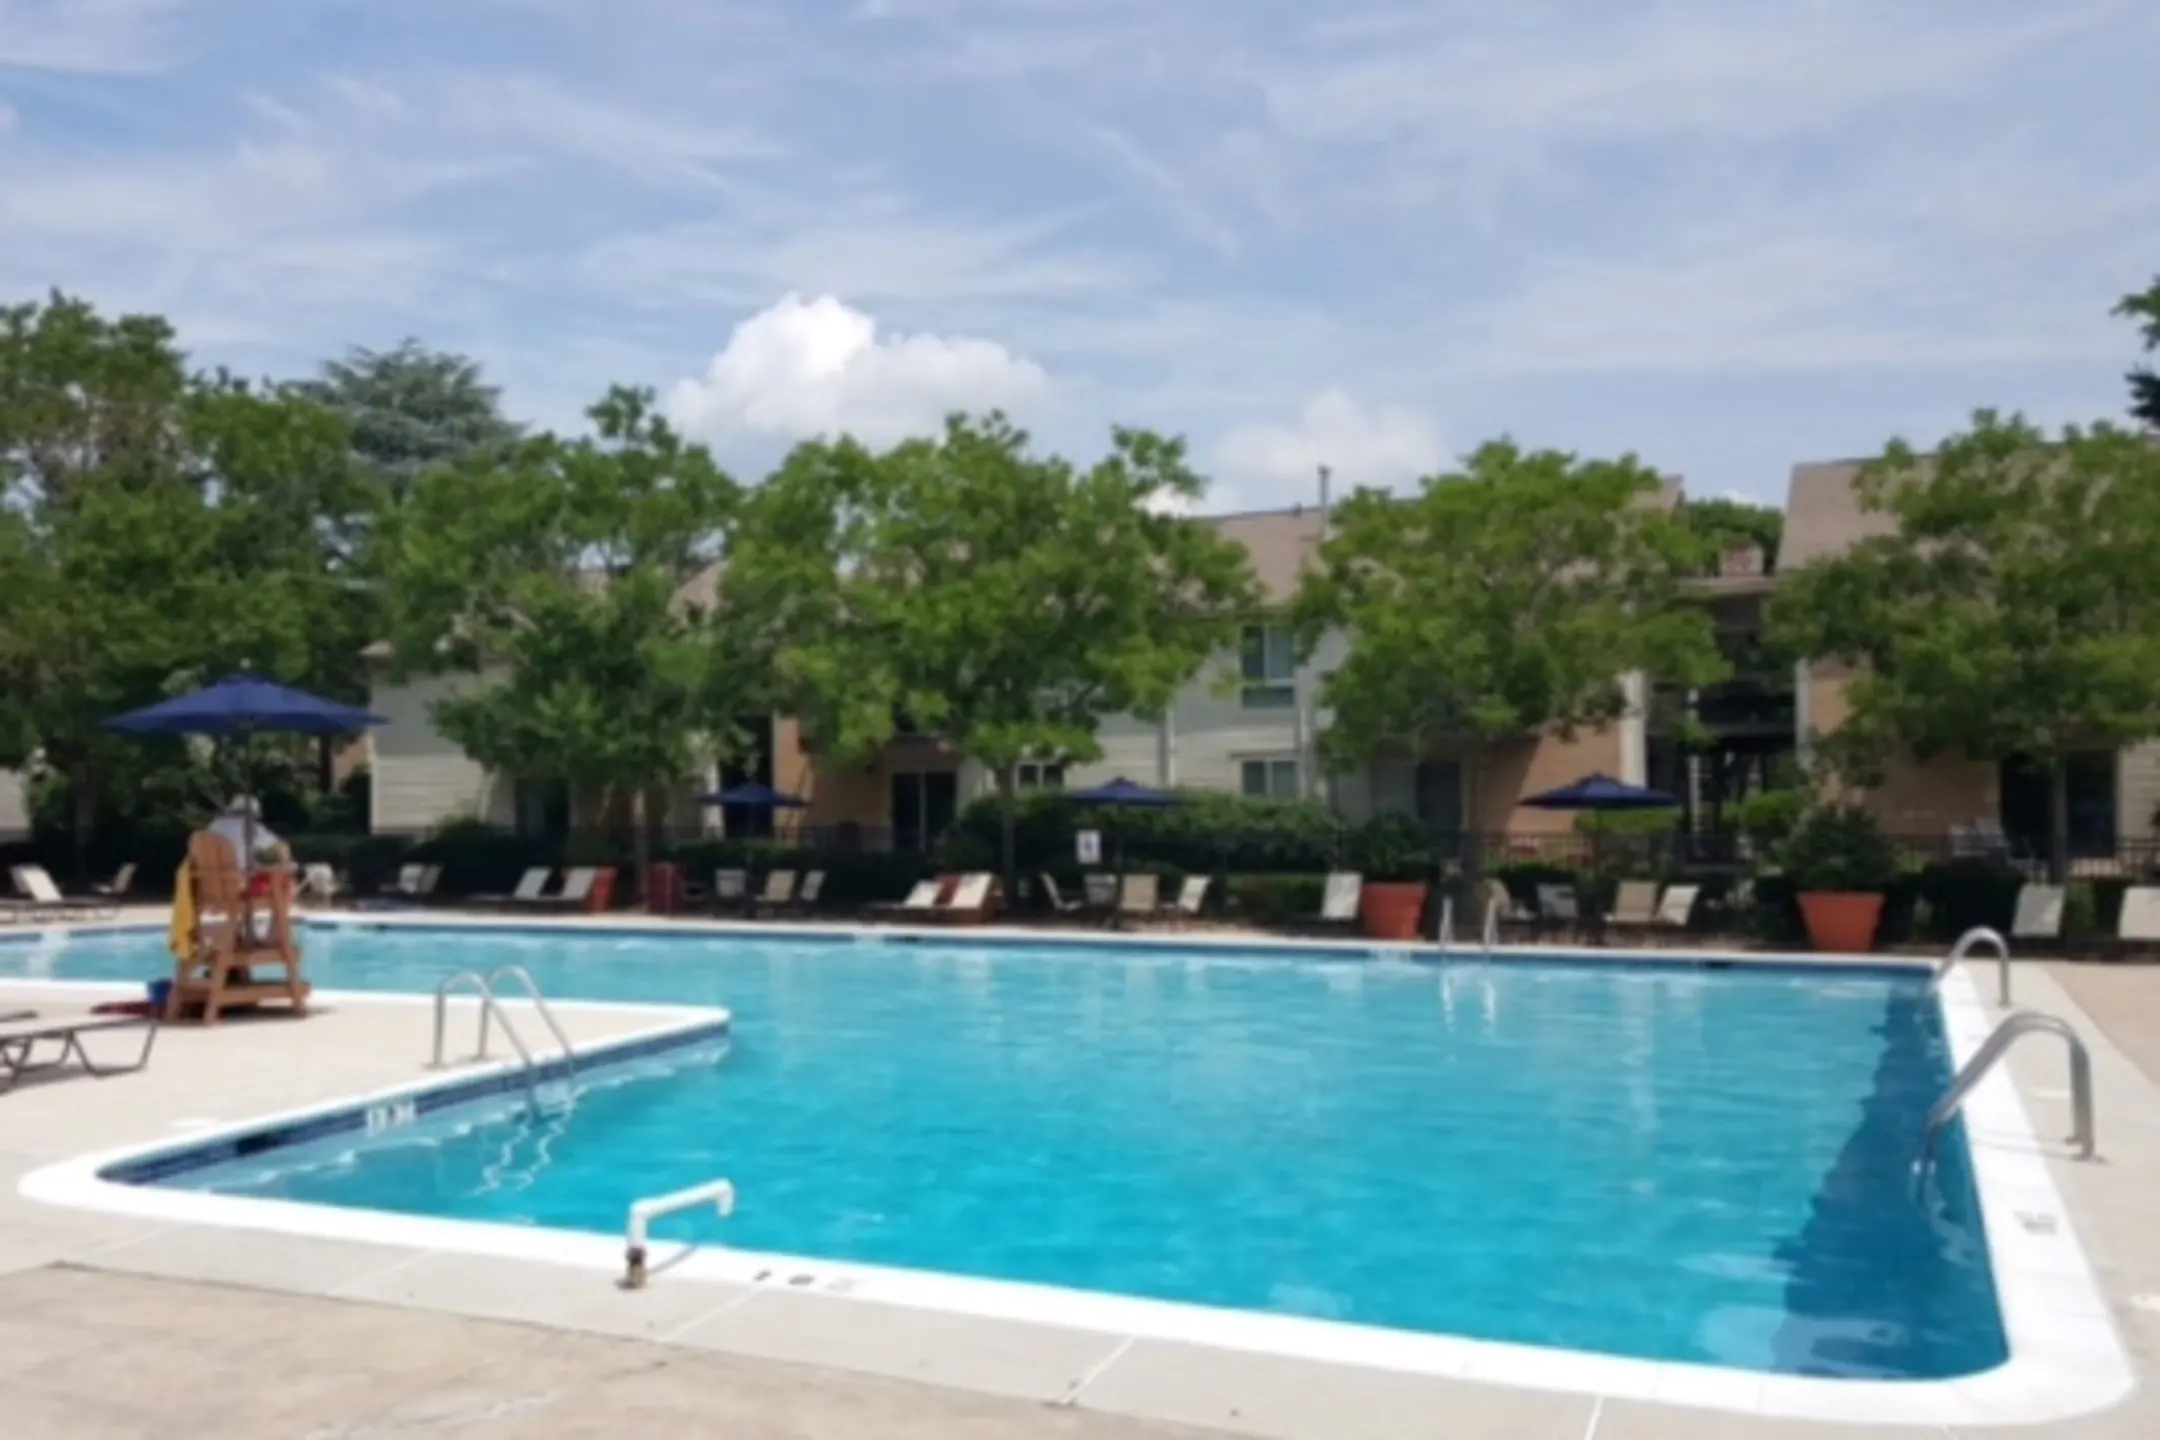 Pool - The Crossings at Plainsboro - Plainsboro, NJ